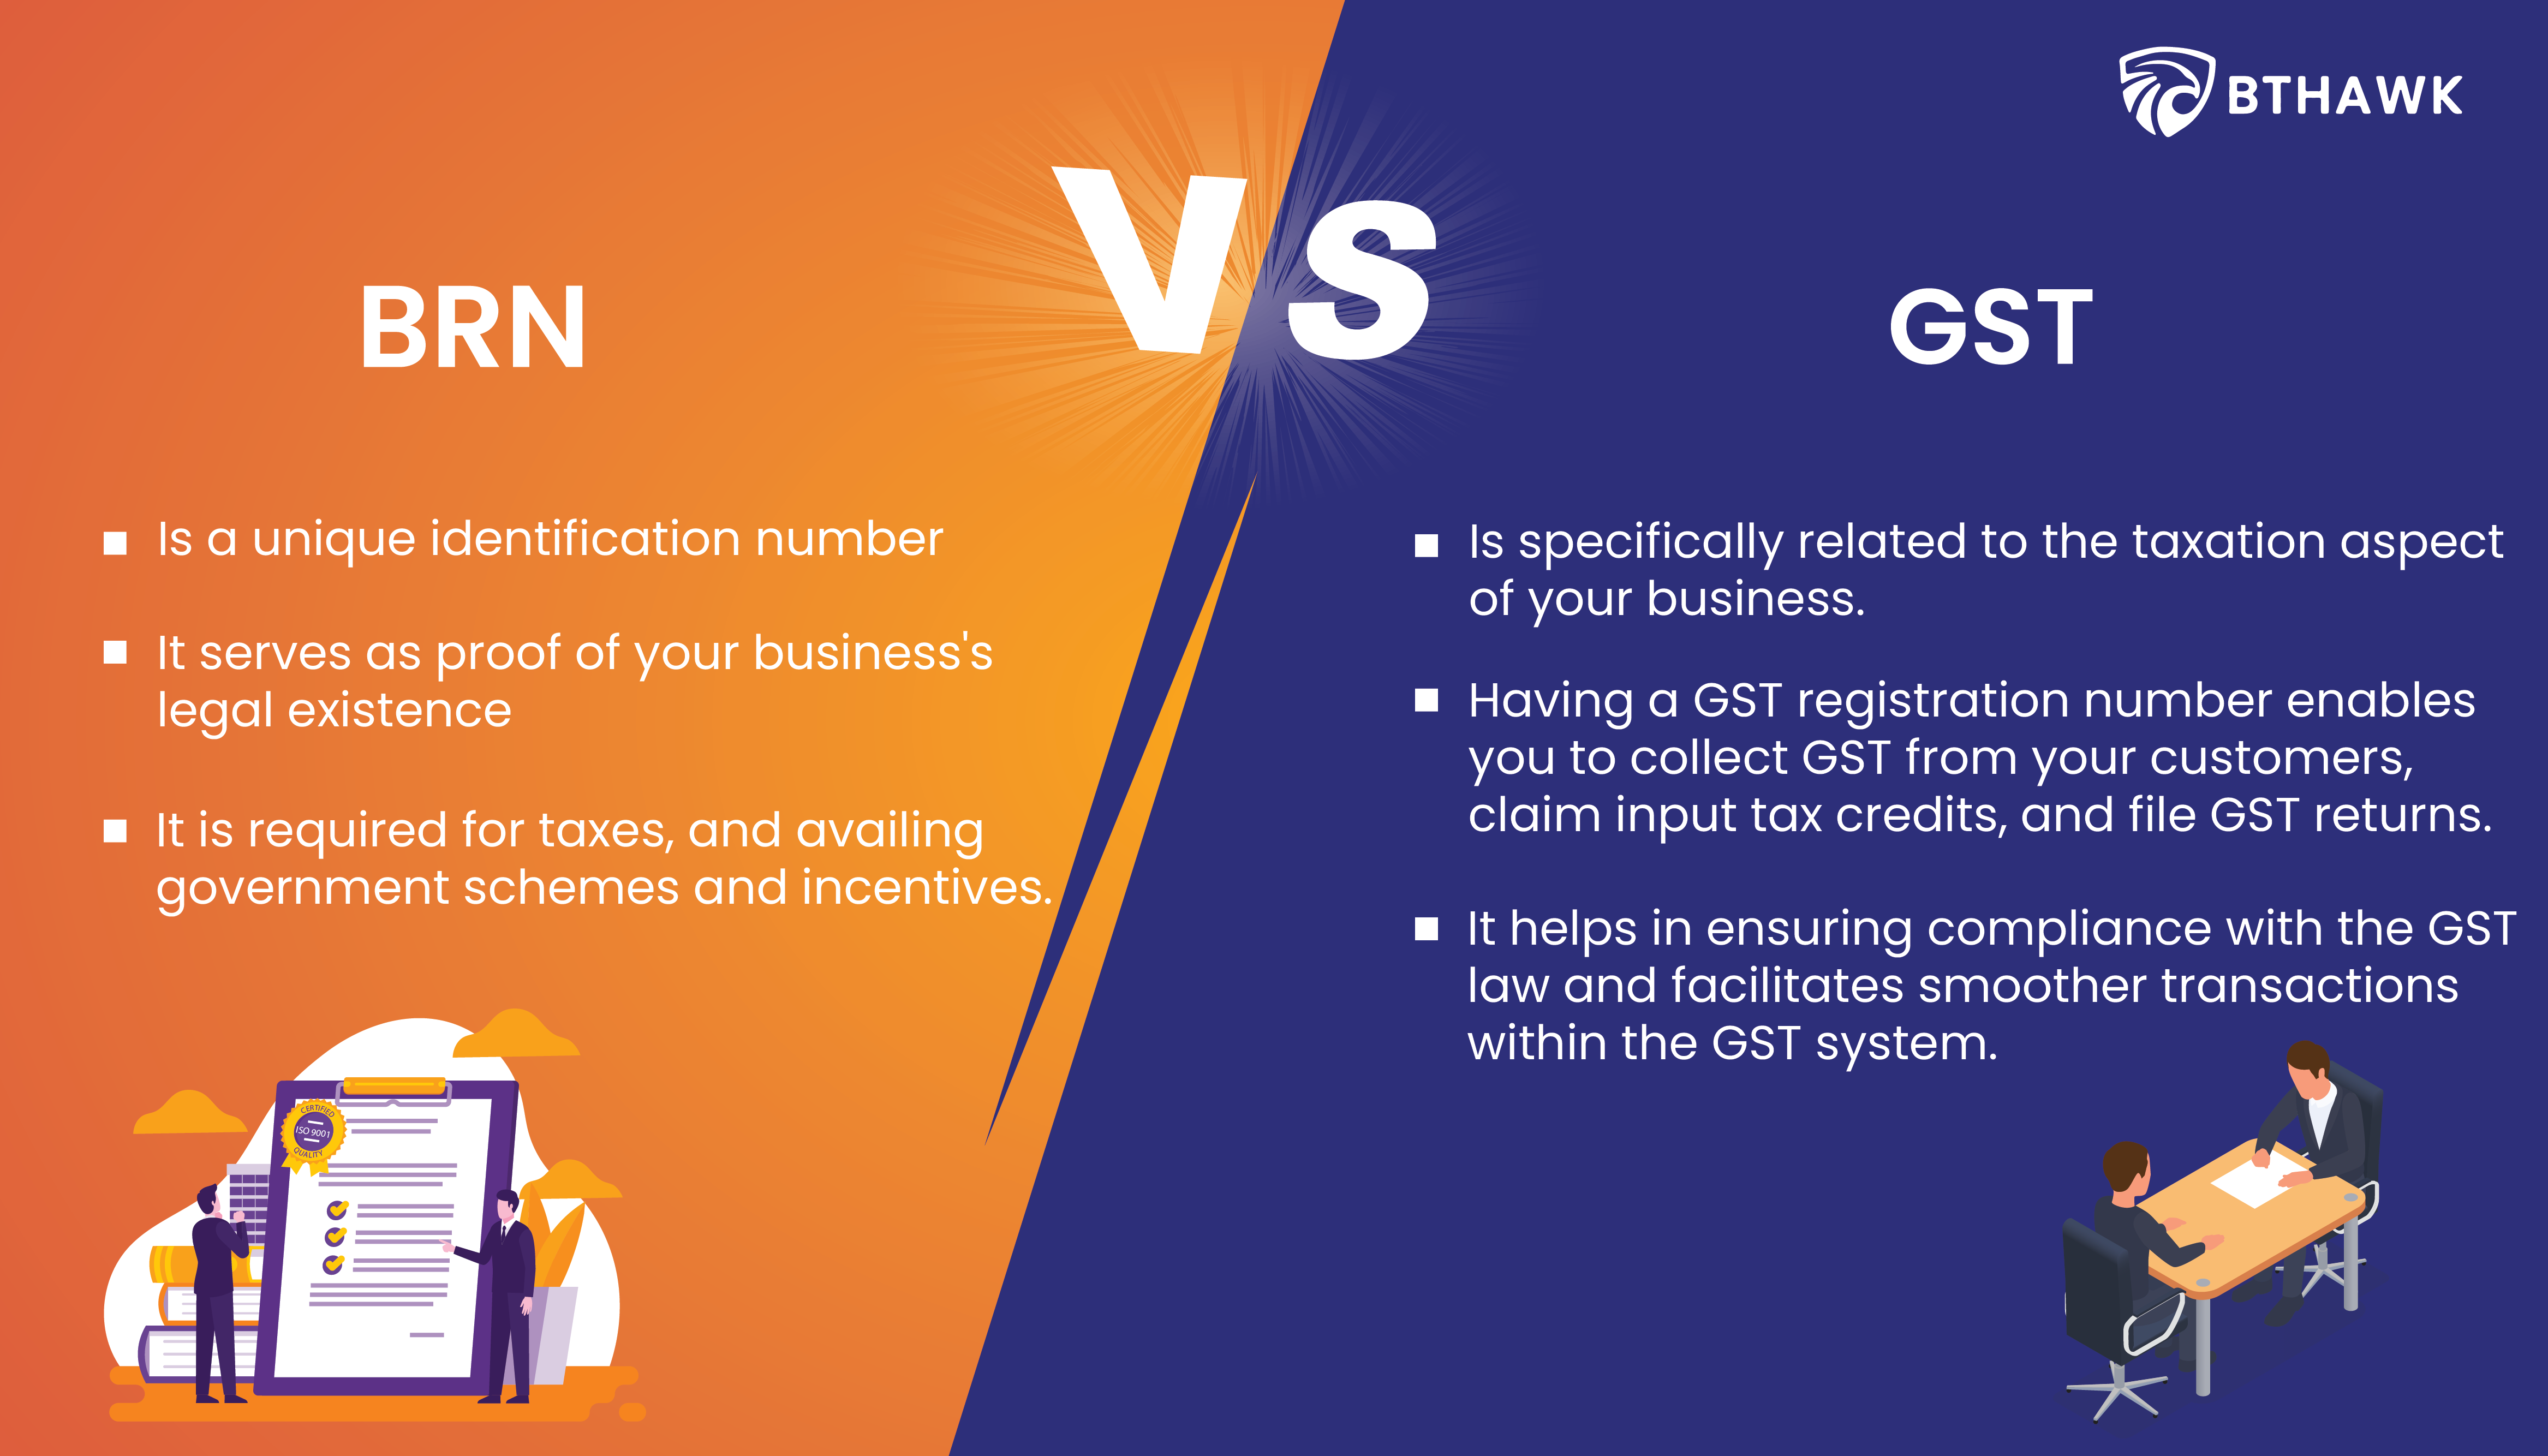 Business registration number versus GST registration number